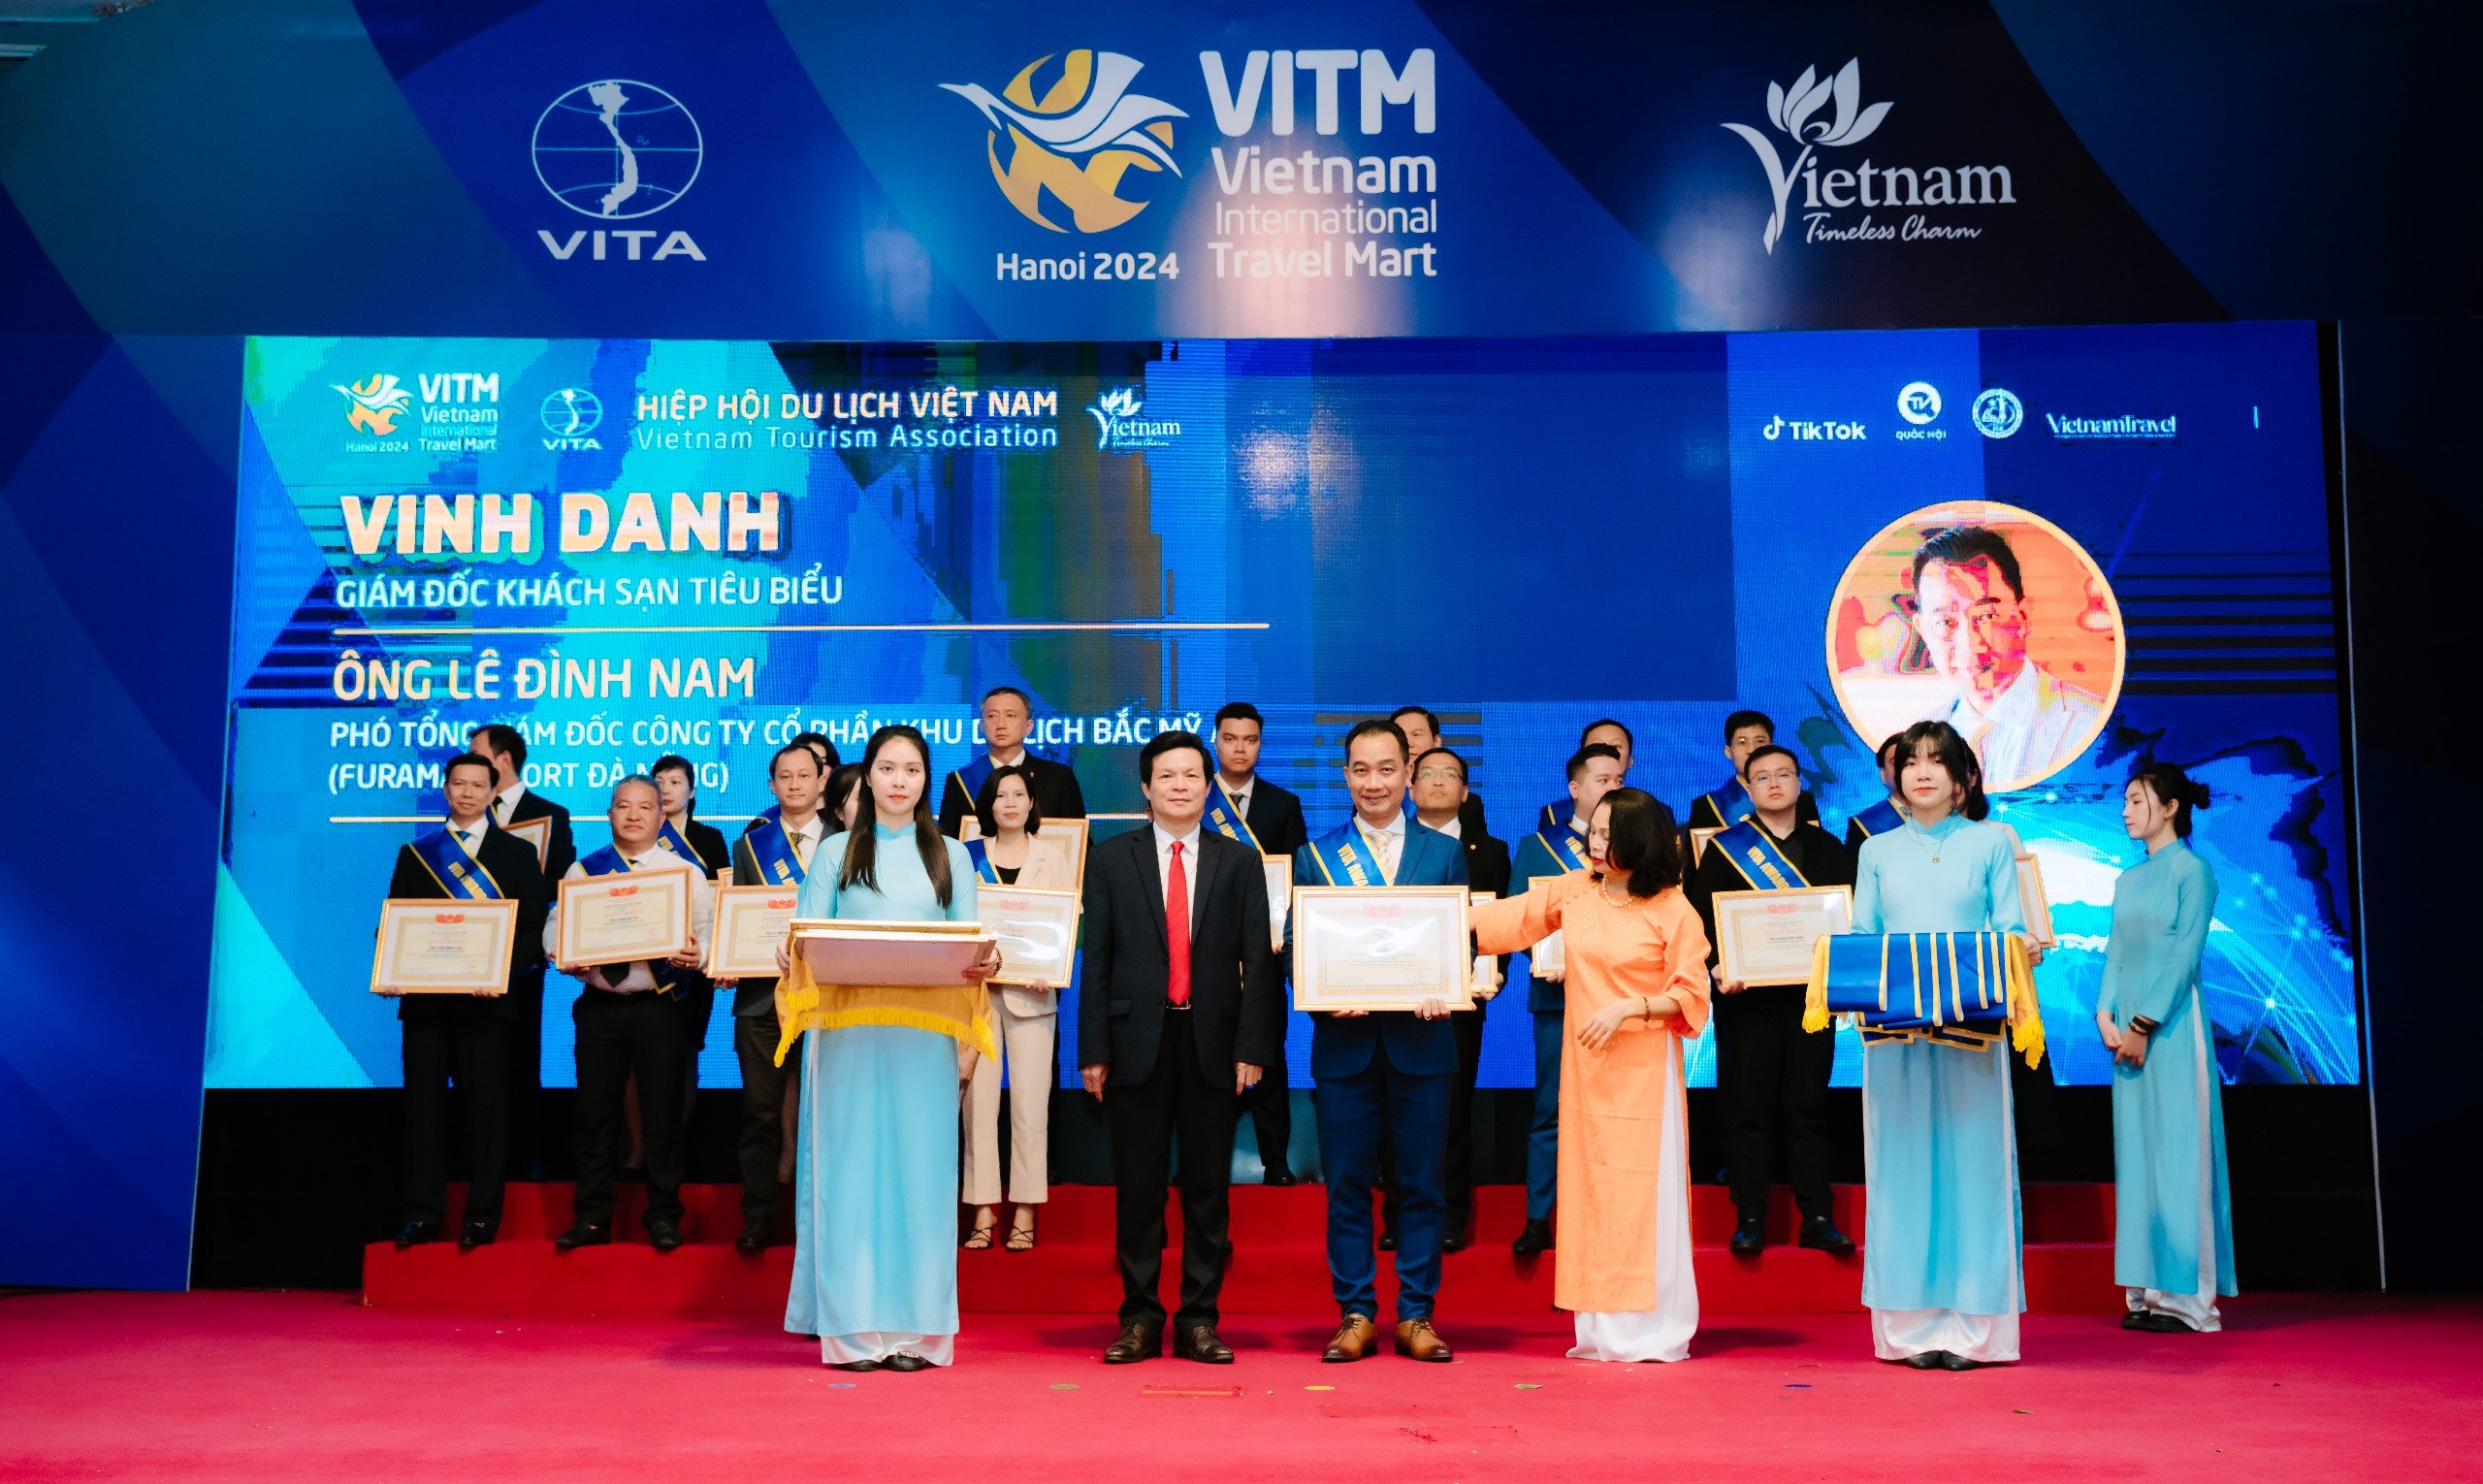 Phó Tổng GĐ Furama Lê Đình Nam được vinh danh “Giám đốc khách sạn tiêu biểu” bởi Vietnam Travel Awards 2024